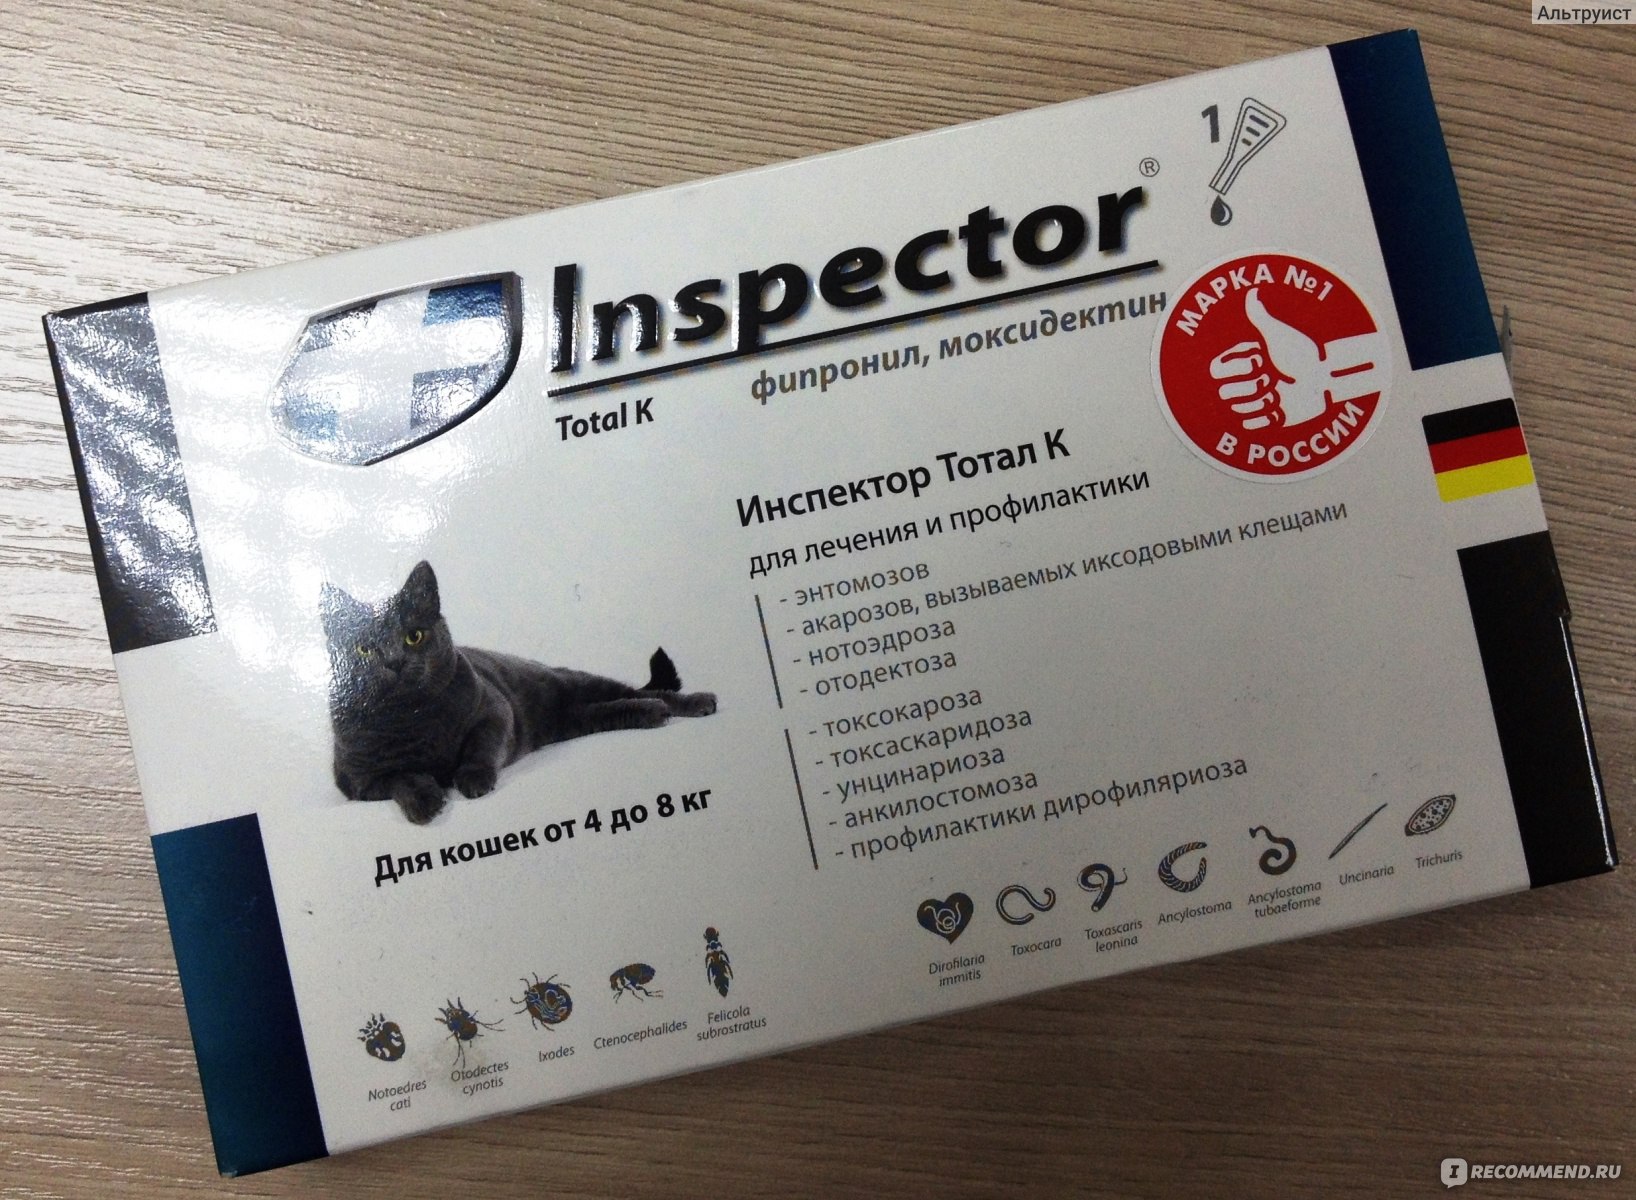 Инспектор - капли для кошек: инструкция по применению, аналоги, состав